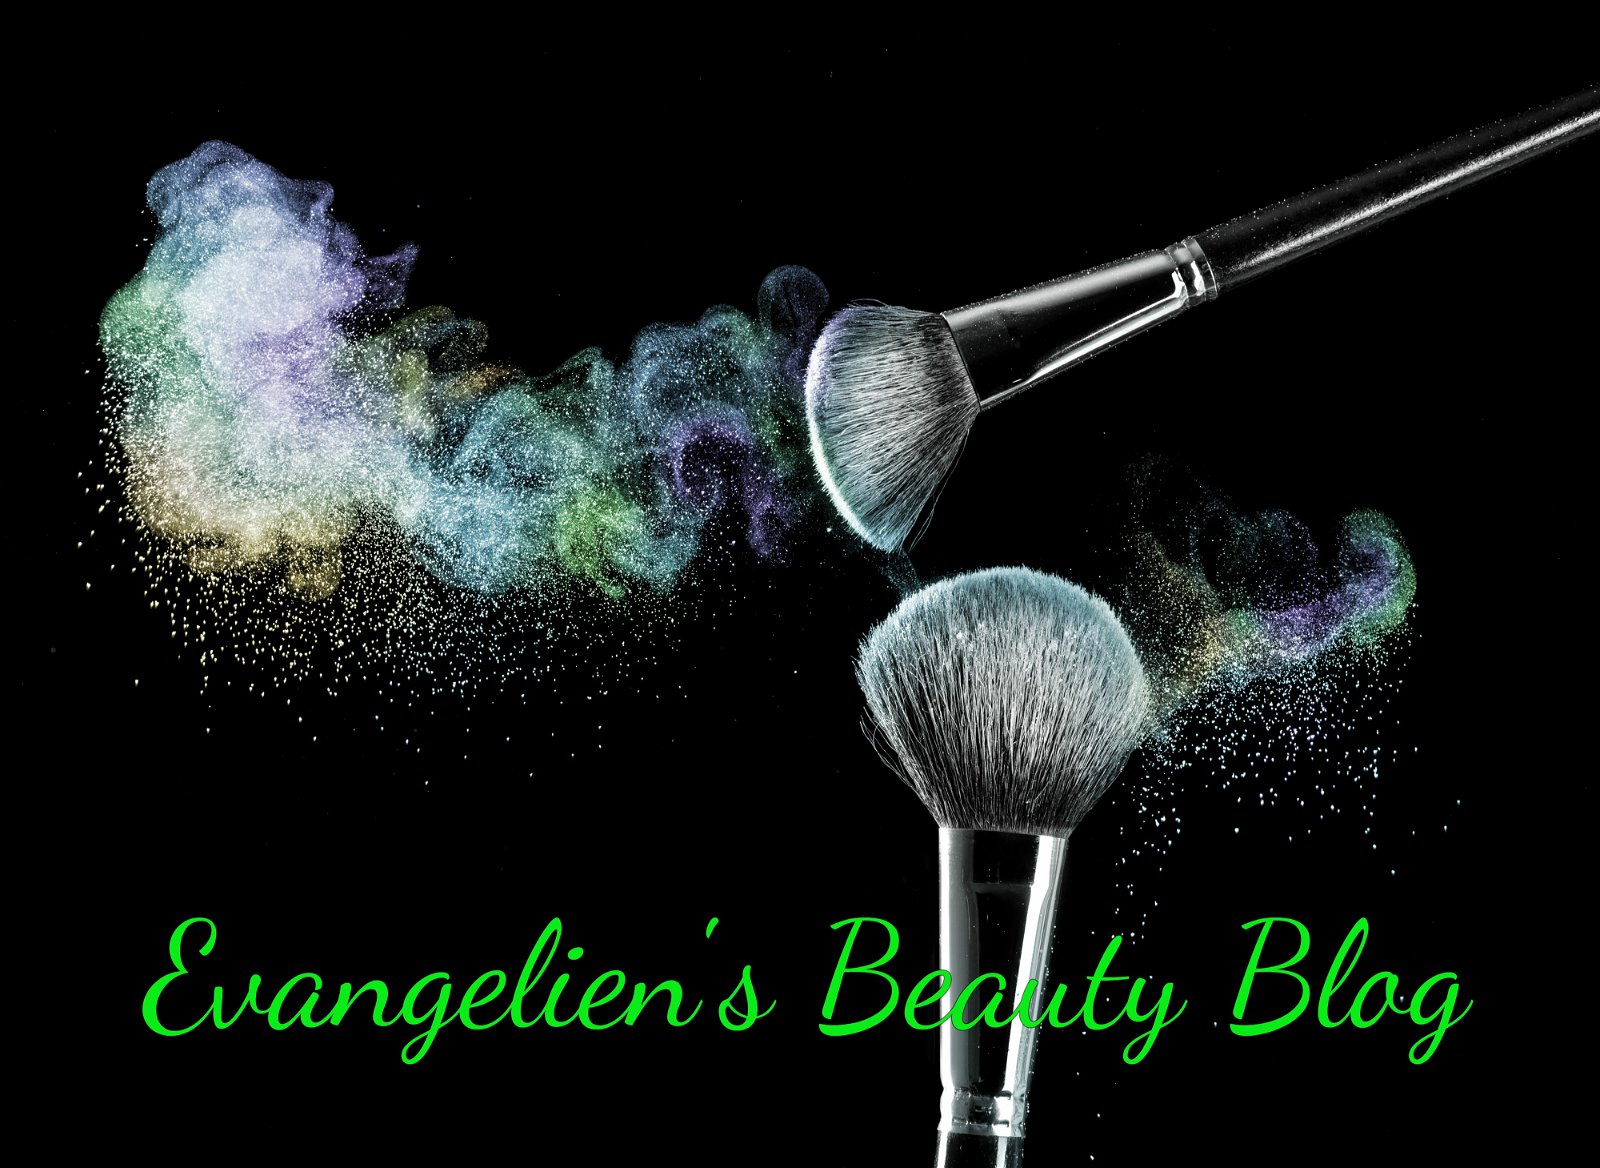 Evangelien's Beauty Blog